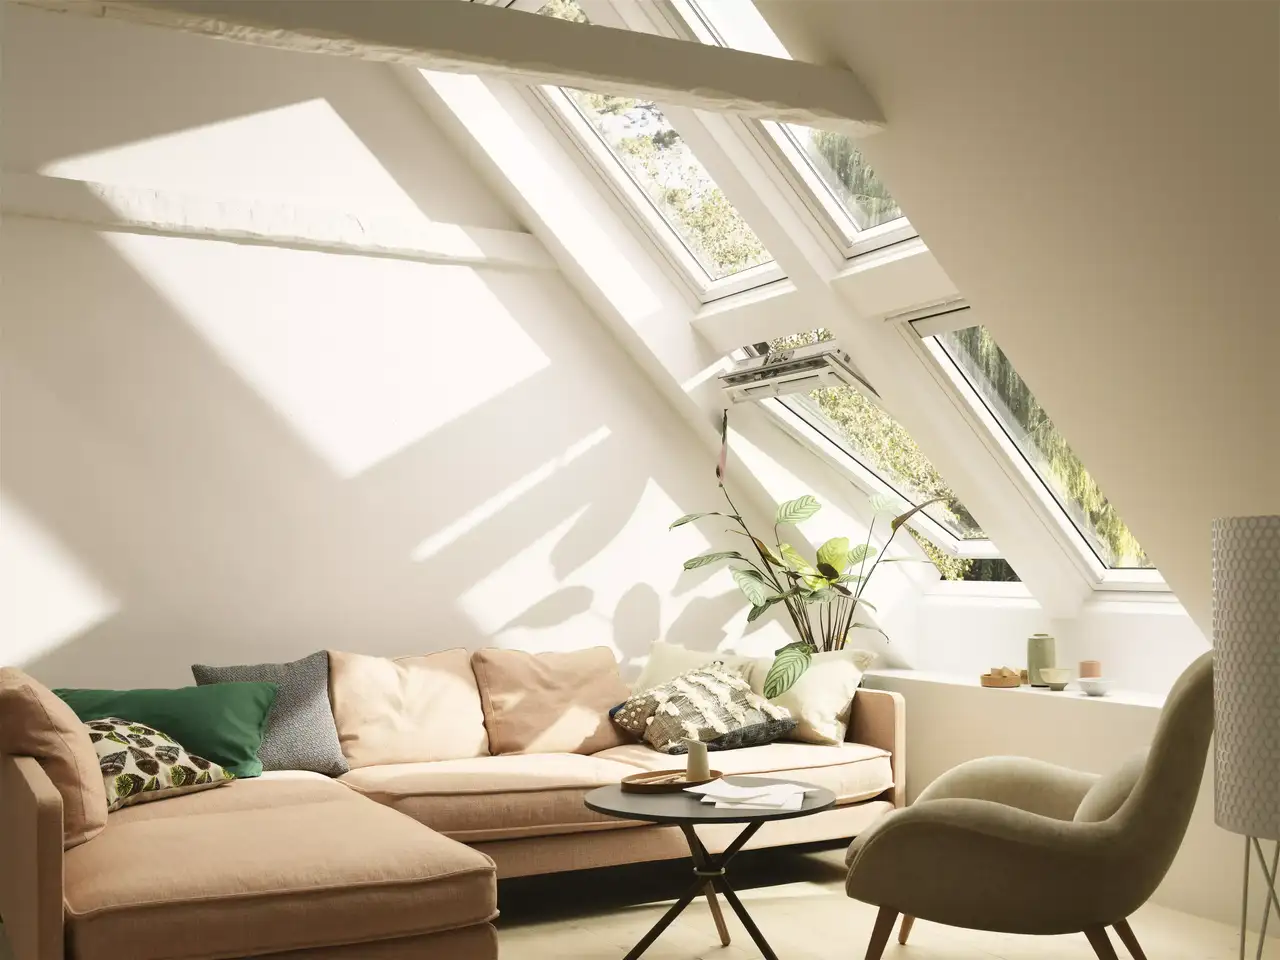 Gemütliches Wohnzimmer im Dachboden mit natürlichem Licht von VELUX Dachflächenfenstern, bequemem Sofa und grünen Pflanzen.